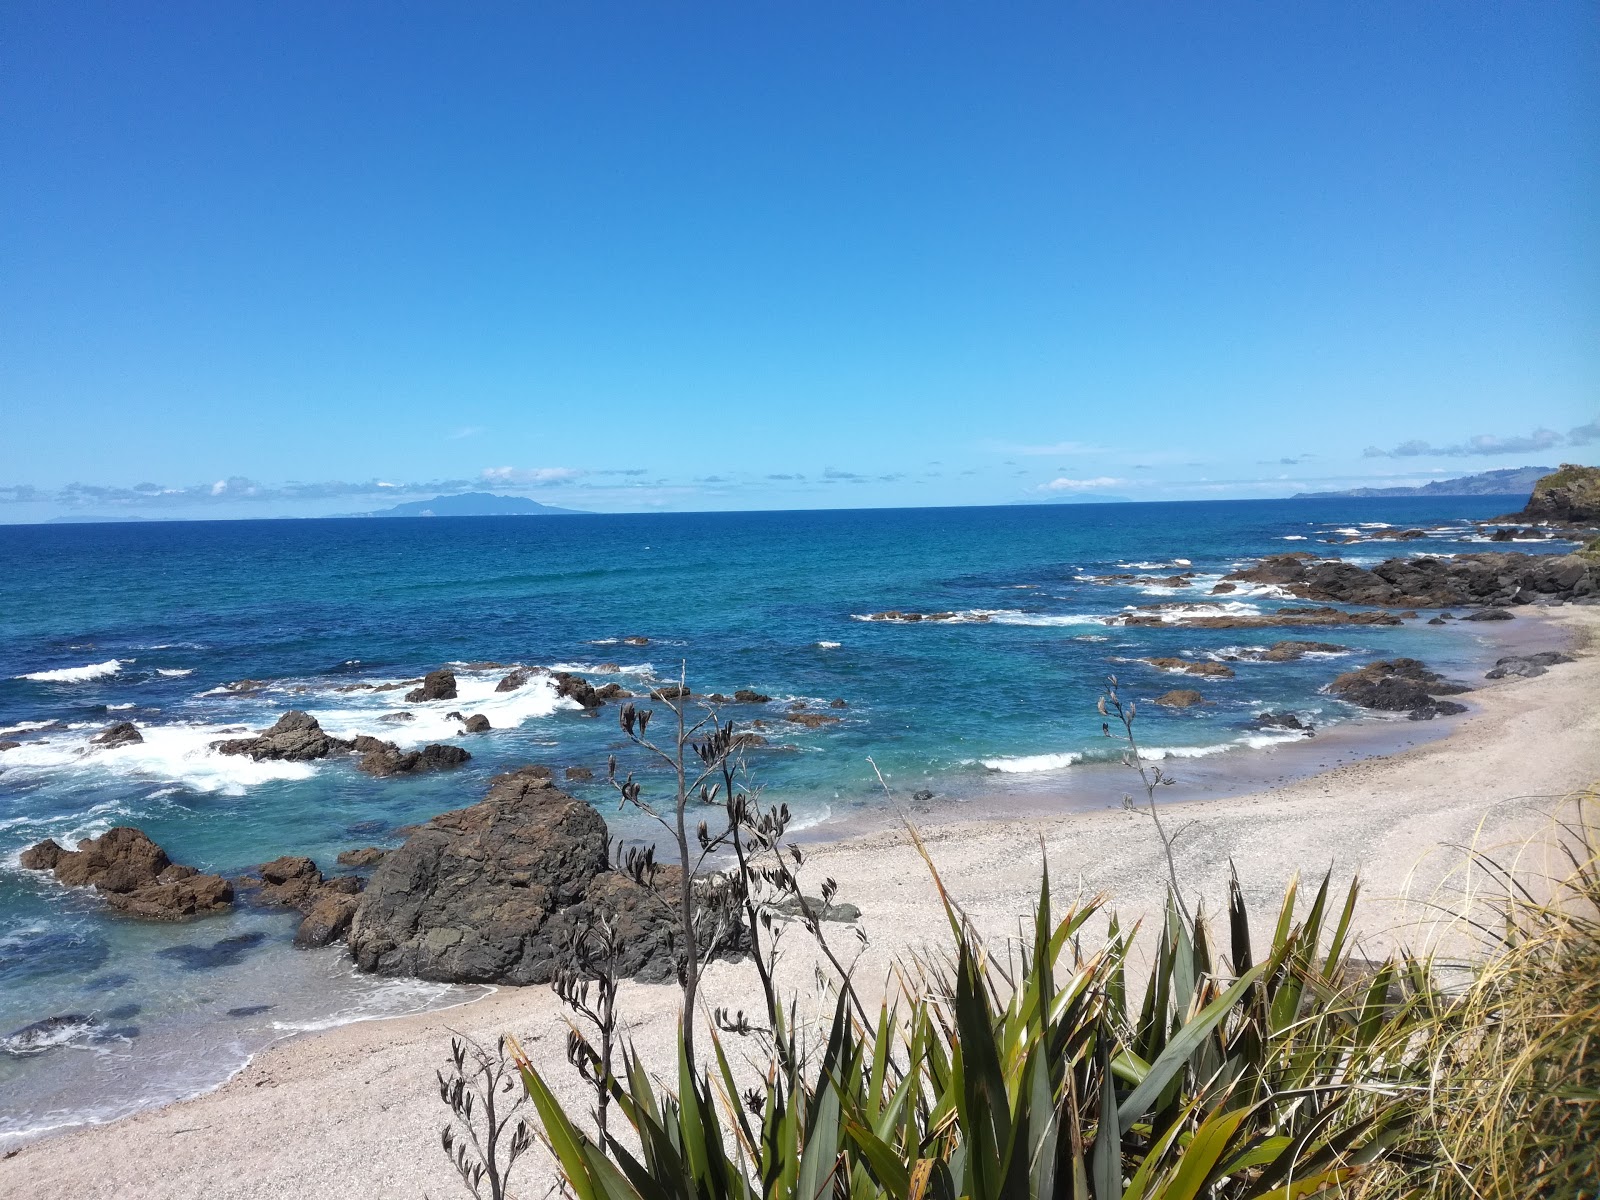 Fotografie cu Te Arai Beach - locul popular printre cunoscătorii de relaxare